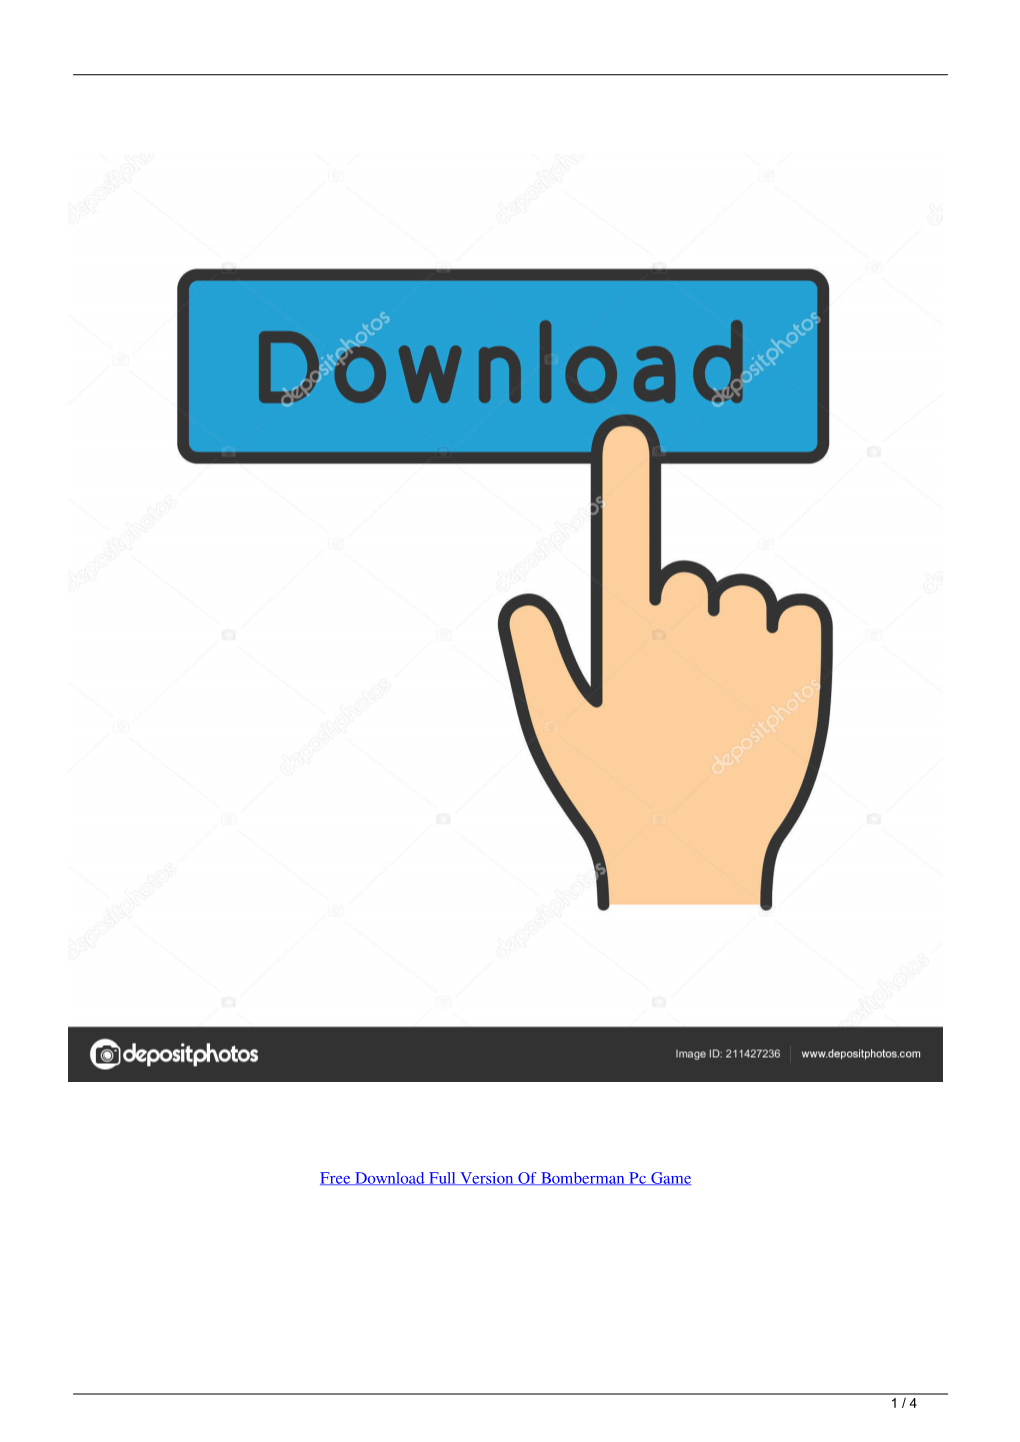 Free Download Full Version of Bomberman Pc Game